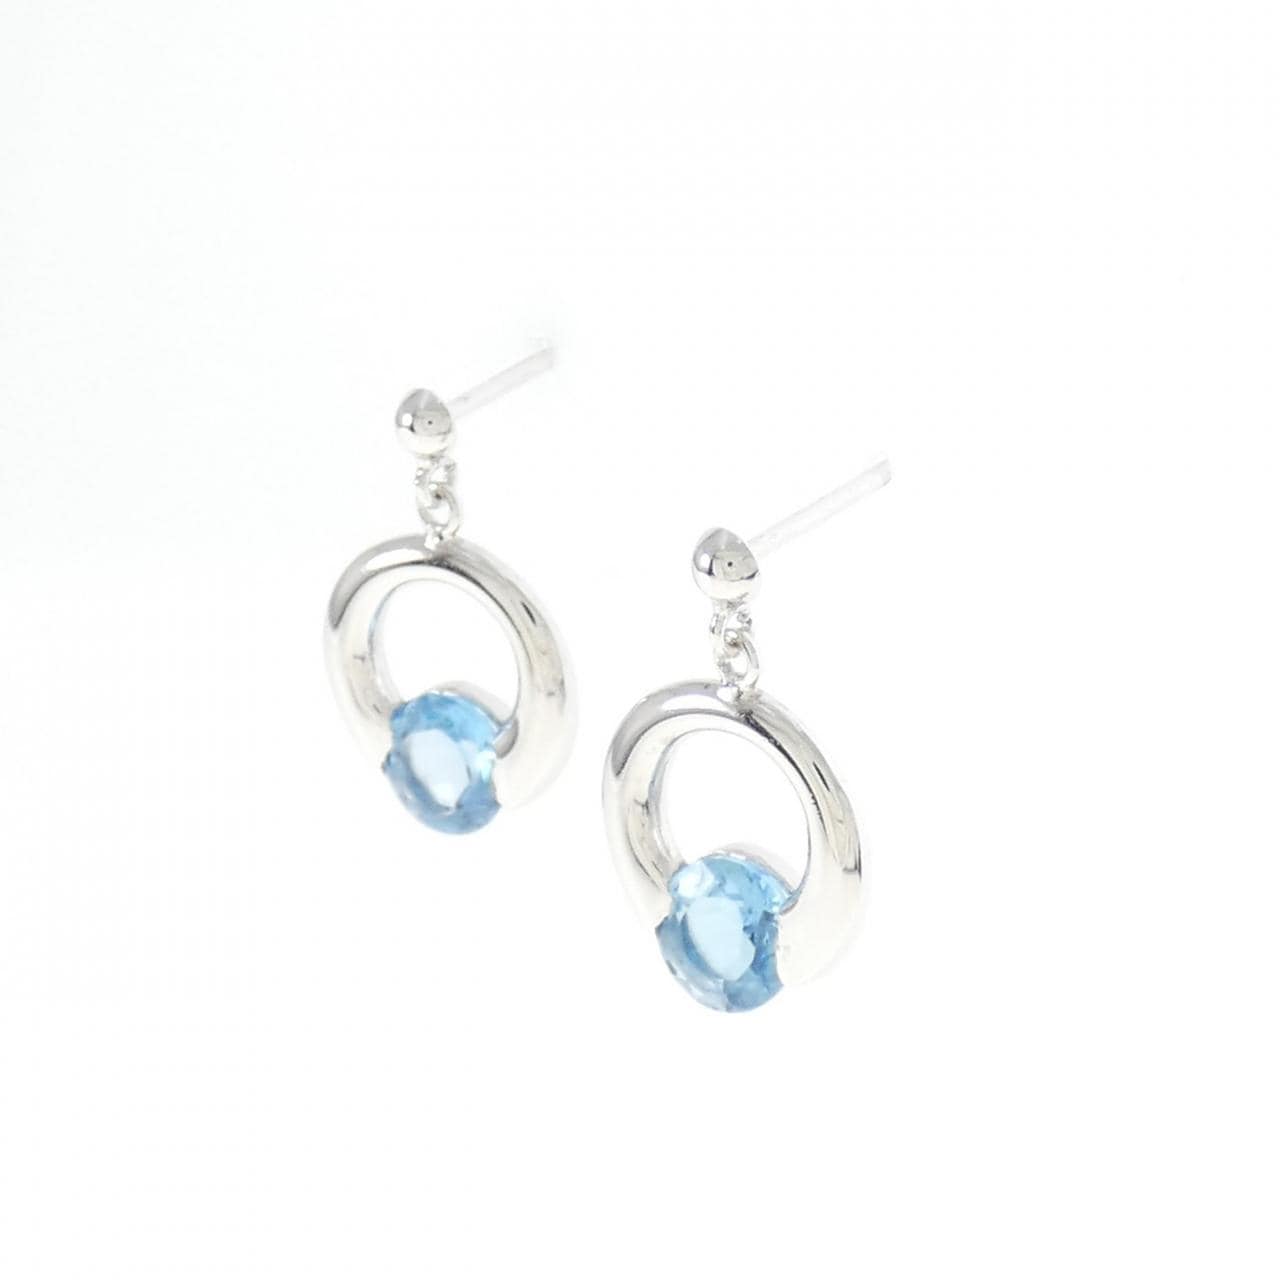 PT blue Topaz earrings